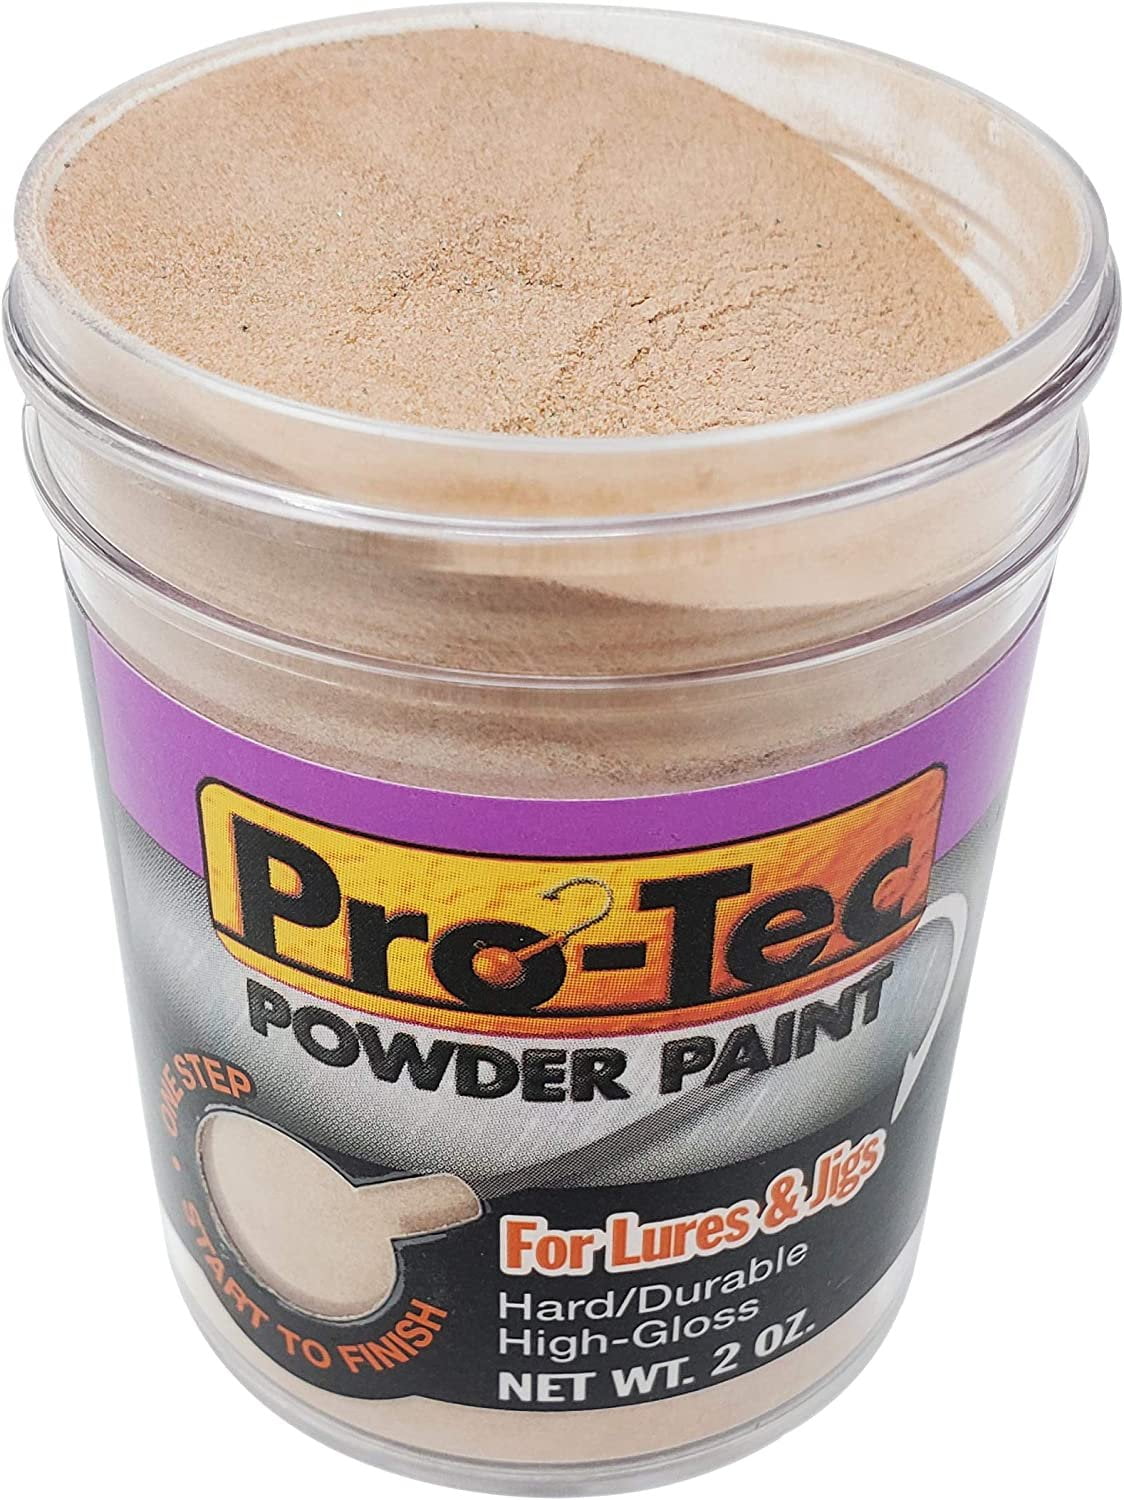 Component Pro-Tec Powder Paint